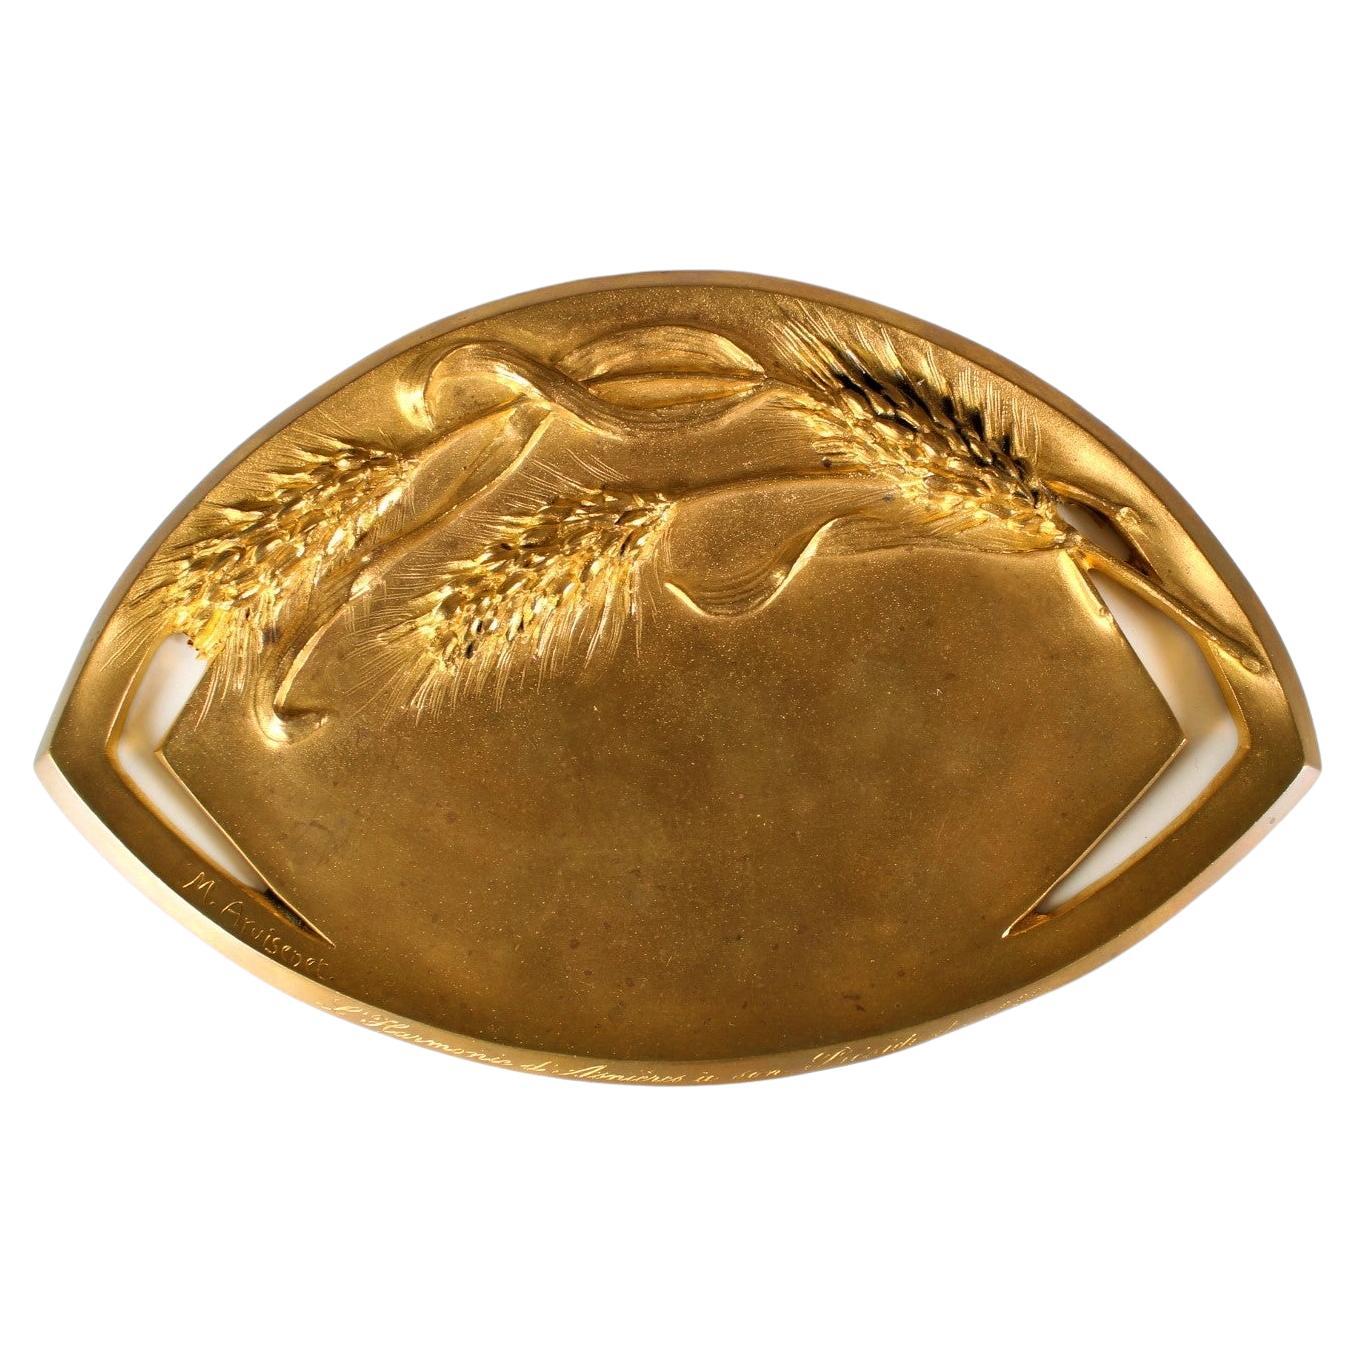 Assiette en bronze antique, plateau à ustensiles, bronze doré, signée M. I&M.